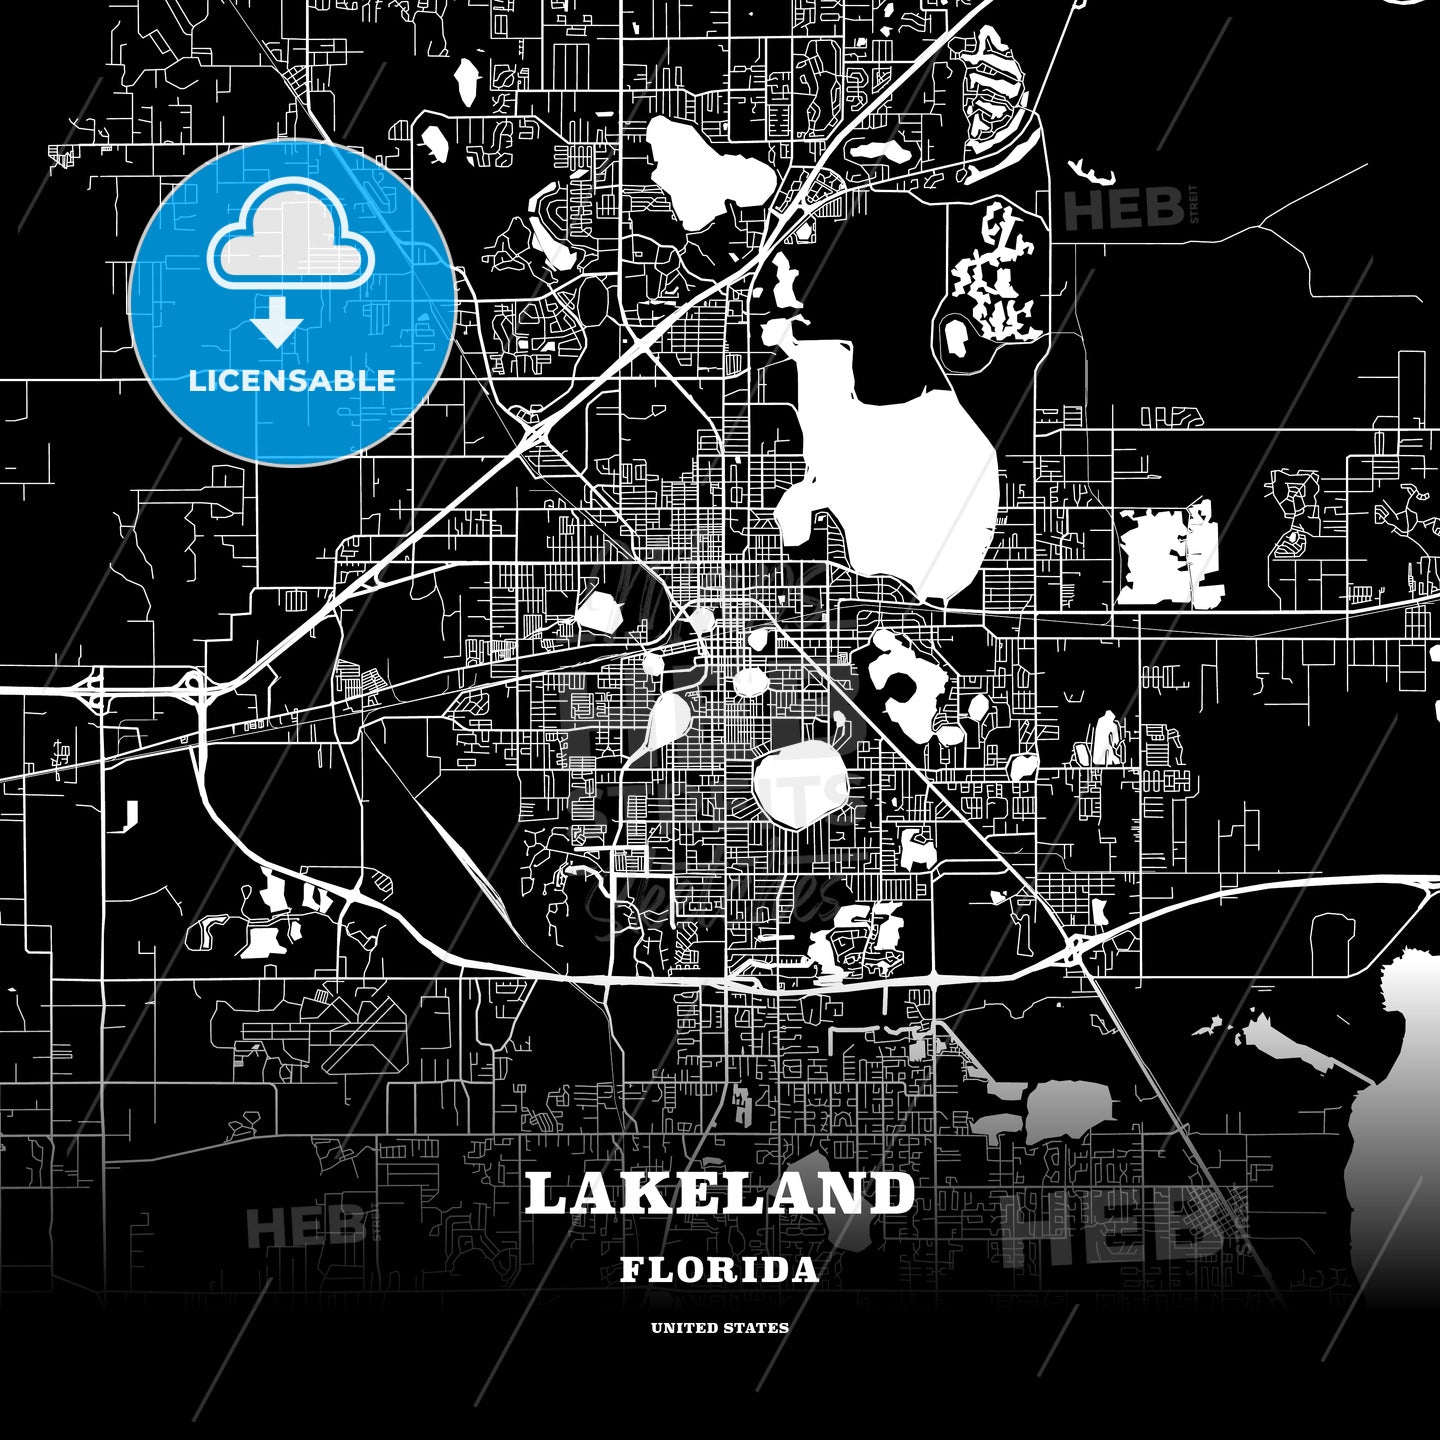 Lakeland, Florida, USA map